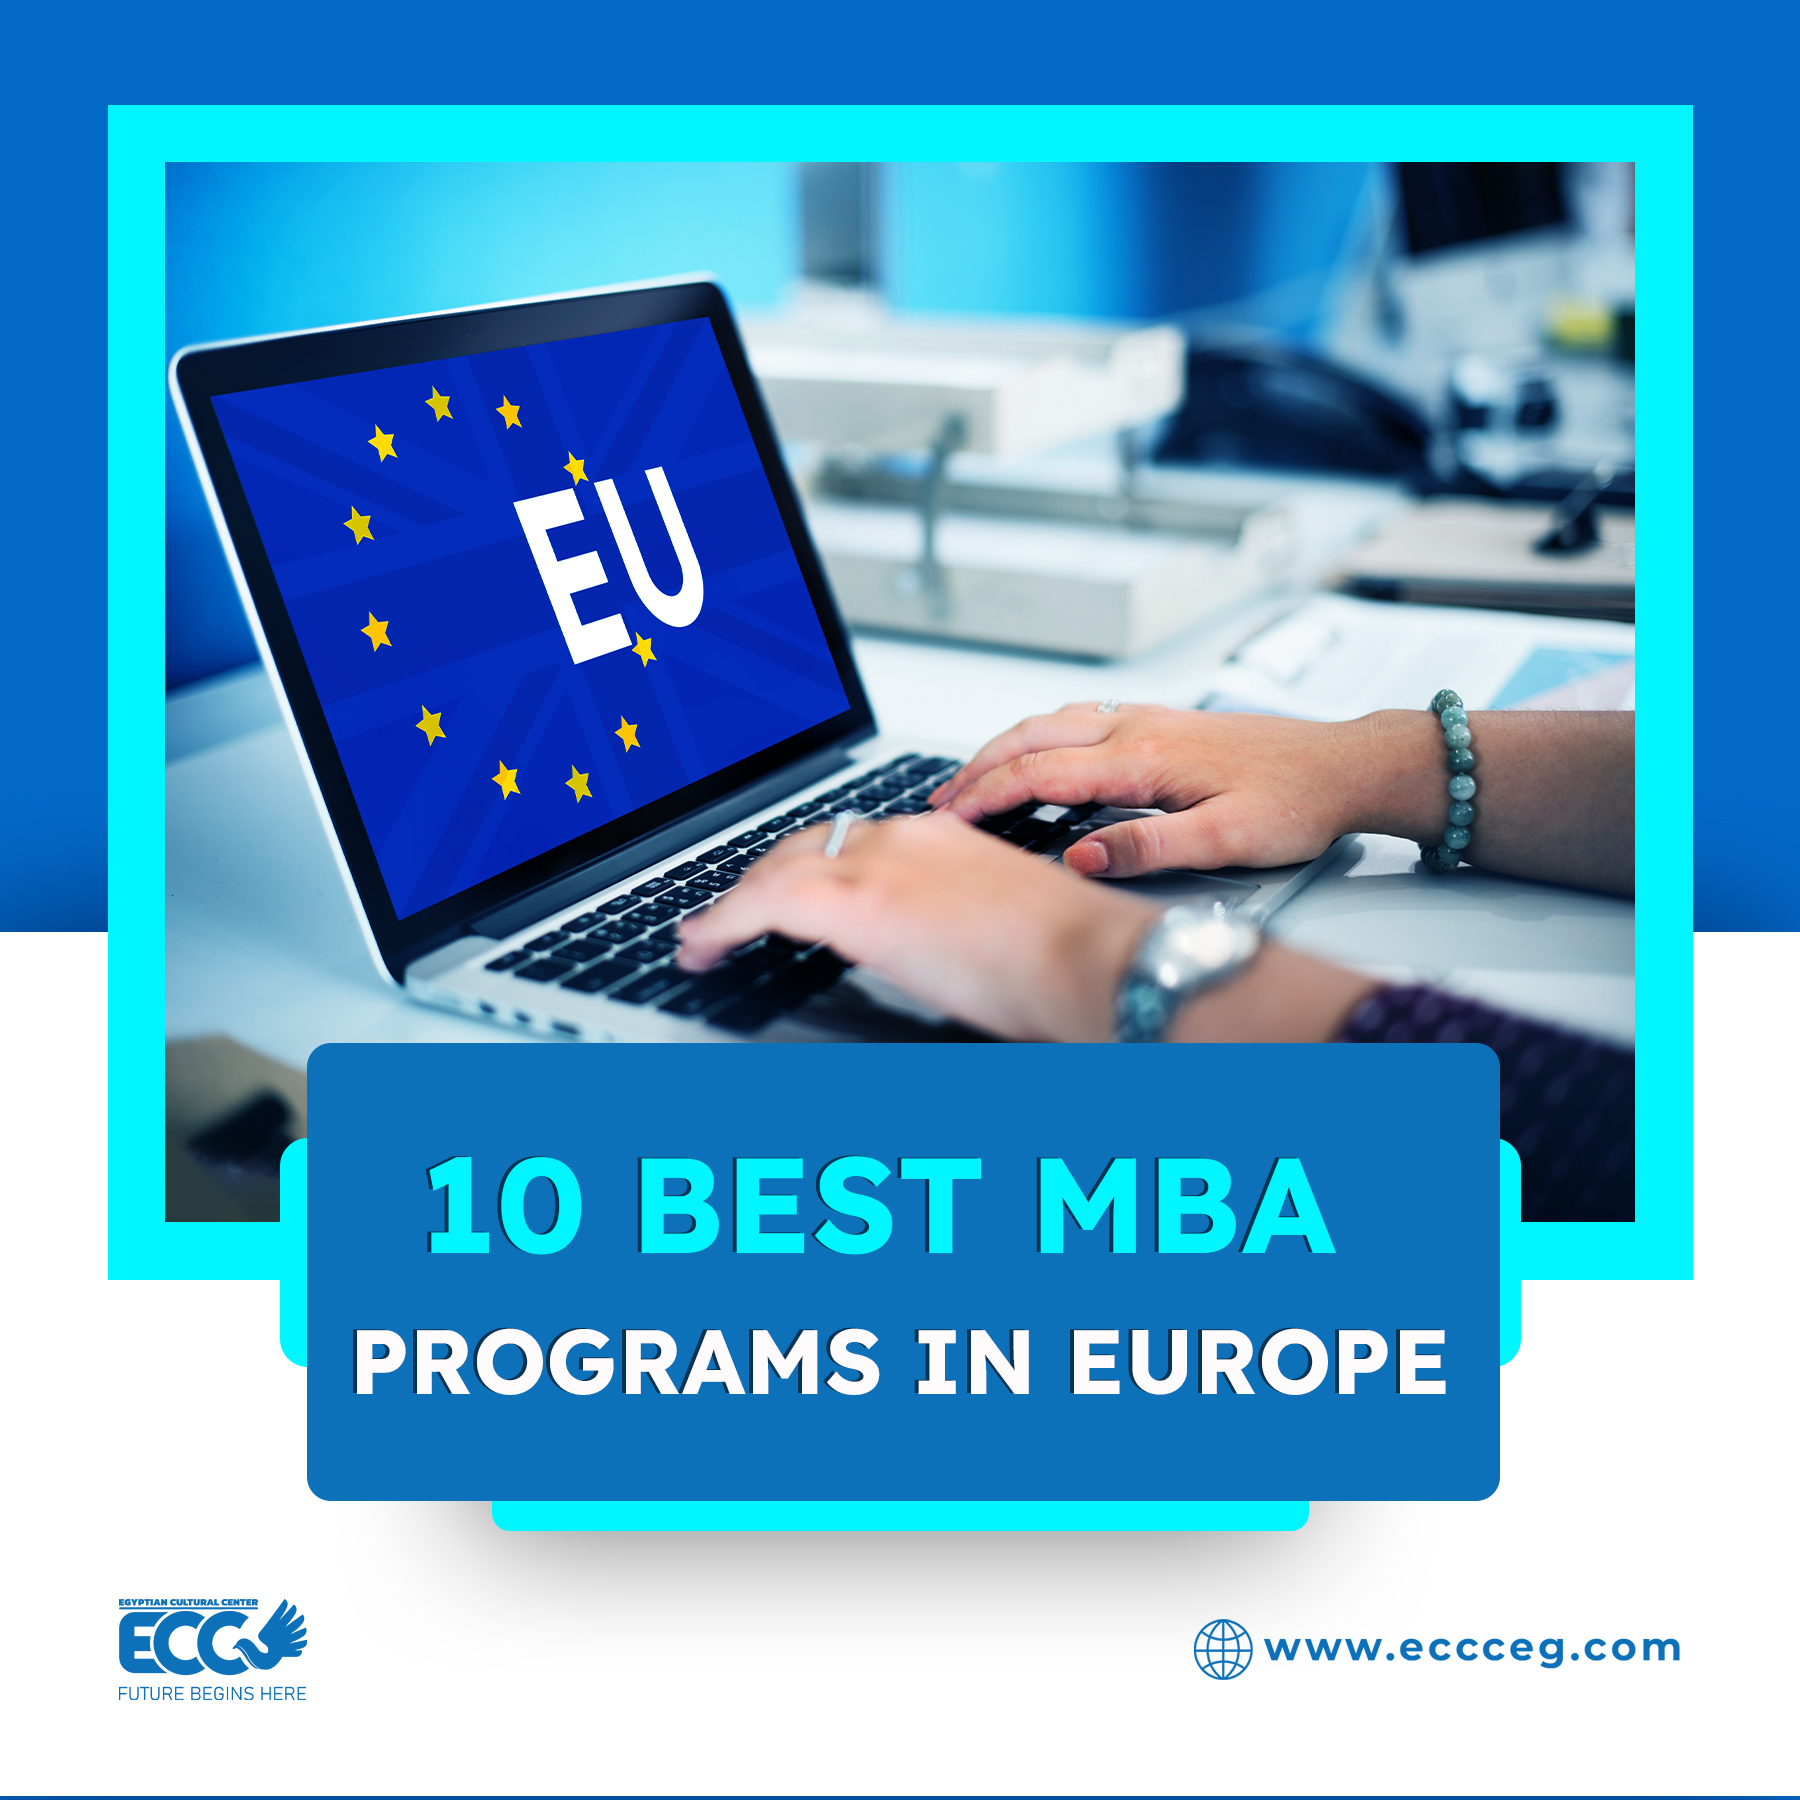 10 BEST MBA PROGRAMS IN EUROPE